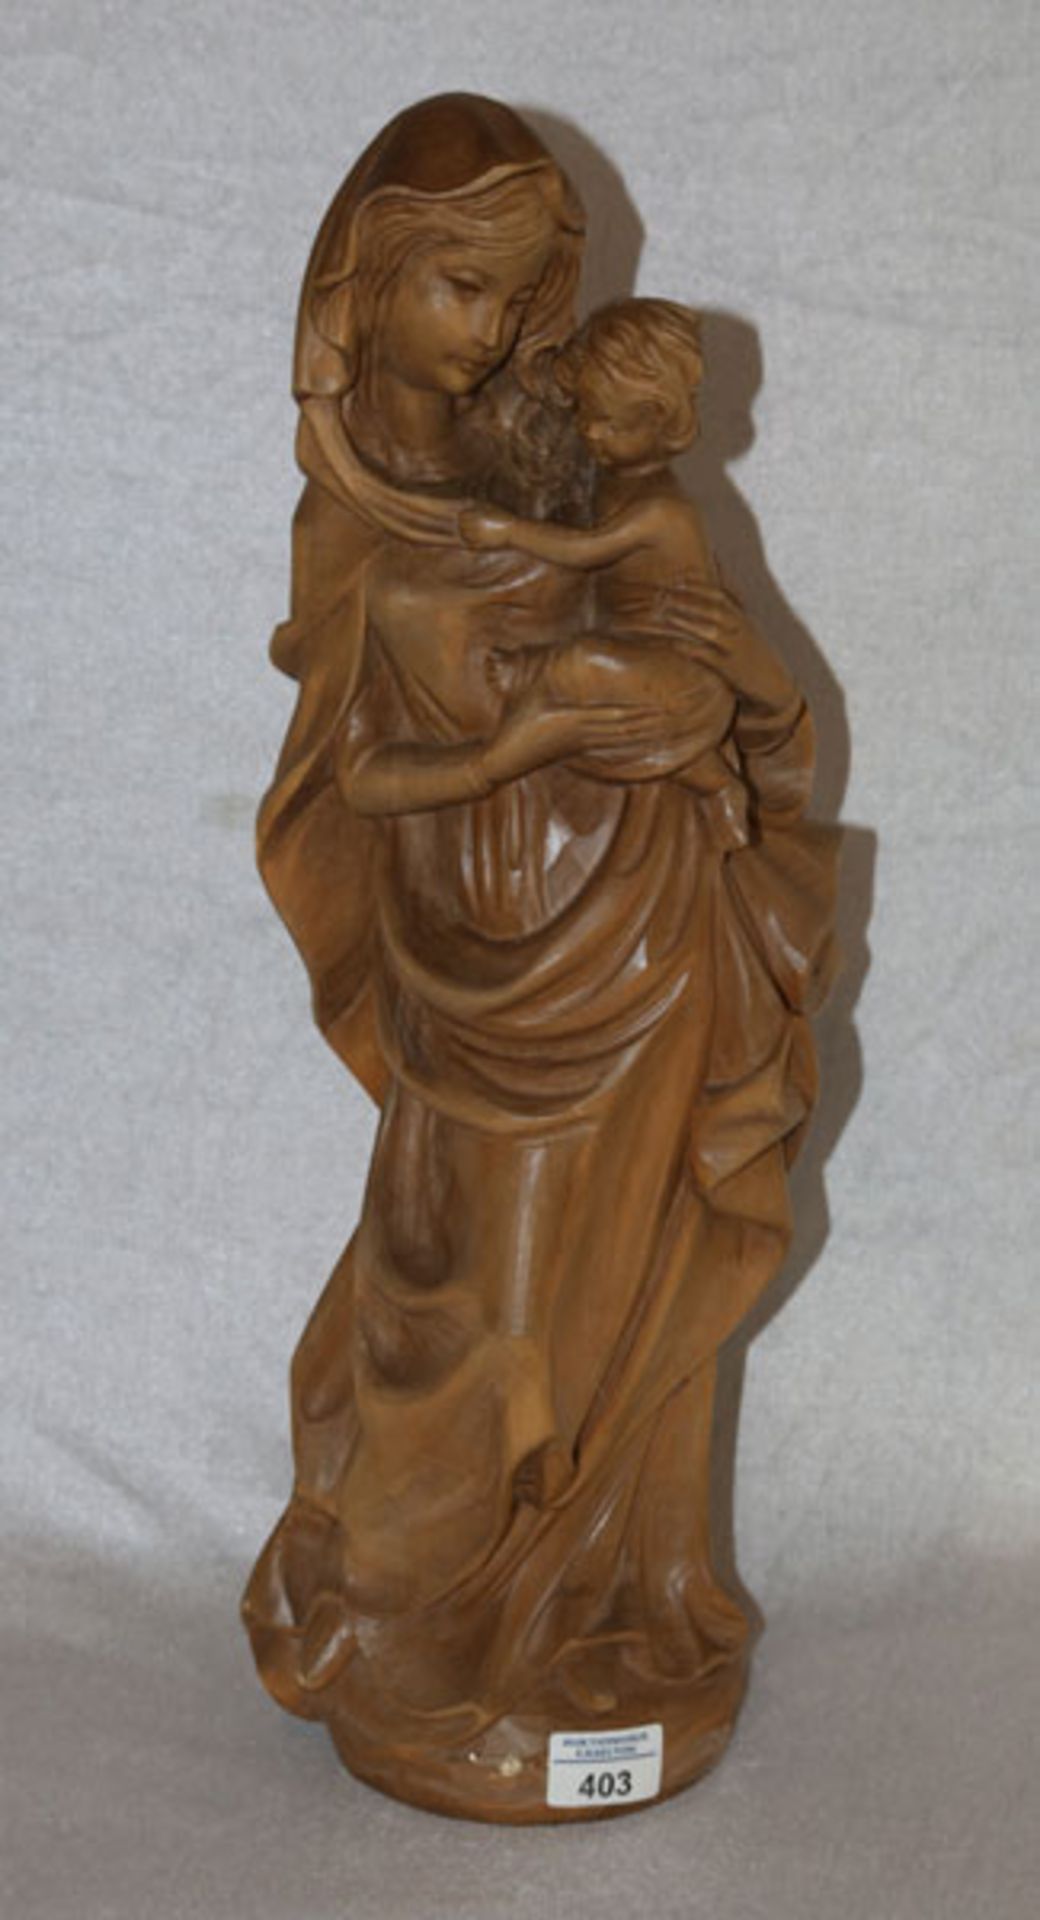 Holz Figurenskulptur 'Maria mit Kind', dunkel gebeizt, am Boden gemarkt Josef Albl, Oberammergau,